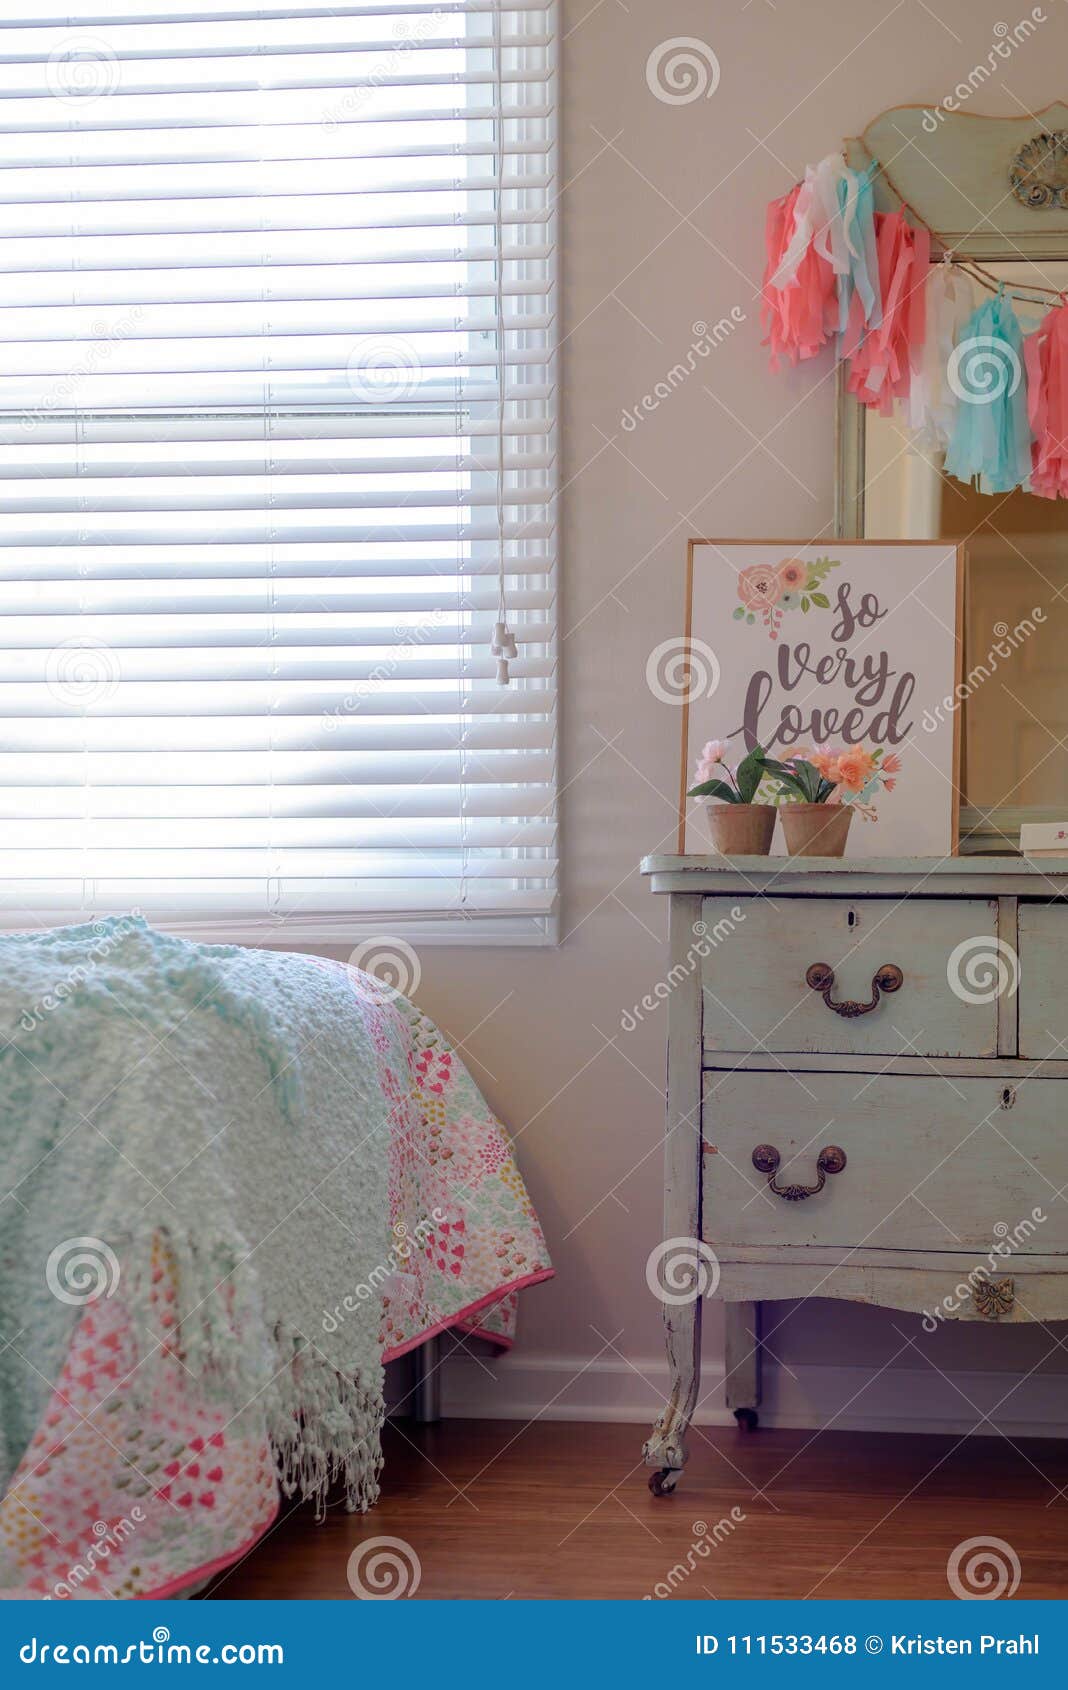 Girls Bedroom Decor With Vintage Dresser In Pastel Mint